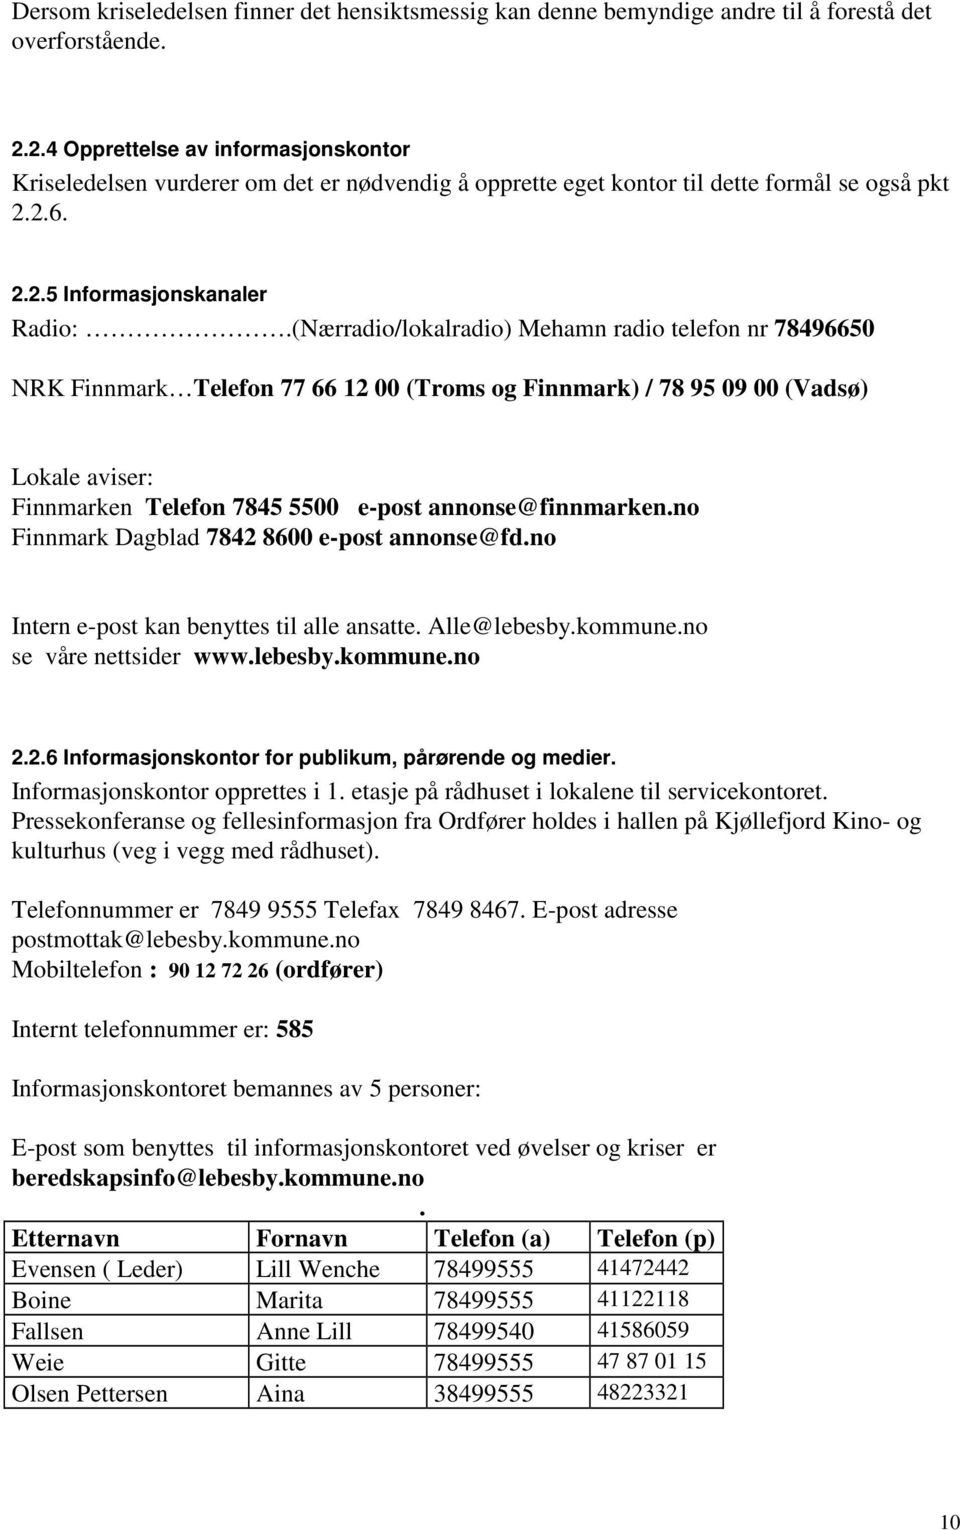 (Nærradio/lokalradio) Mehamn radio telefon nr 78496650 NRK Finnmark Telefon 77 66 12 00 (Troms og Finnmark) / 78 95 09 00 (Vadsø) Lokale aviser: Finnmarken Telefon 7845 5500 e-post annonse@finnmarken.